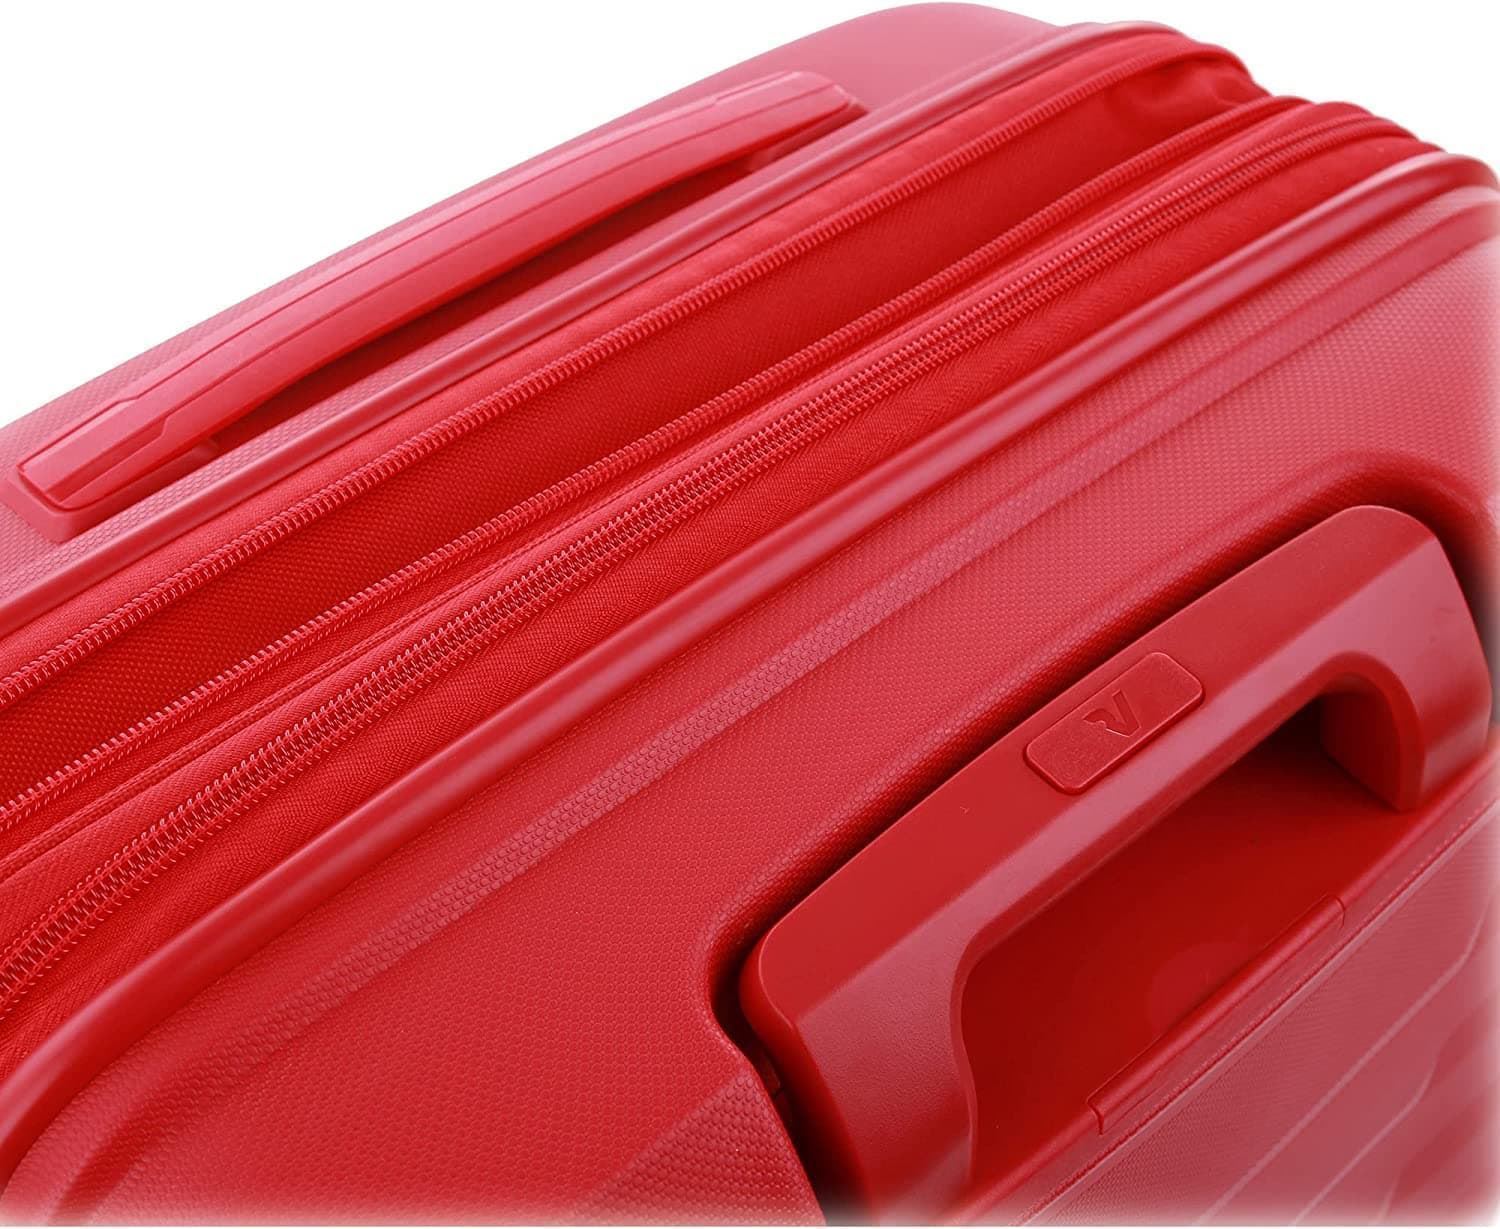 Roncato Maleta Cabina Rigida Skyline Expandible color Rojo USB Garantia 5 años - Imagen 8